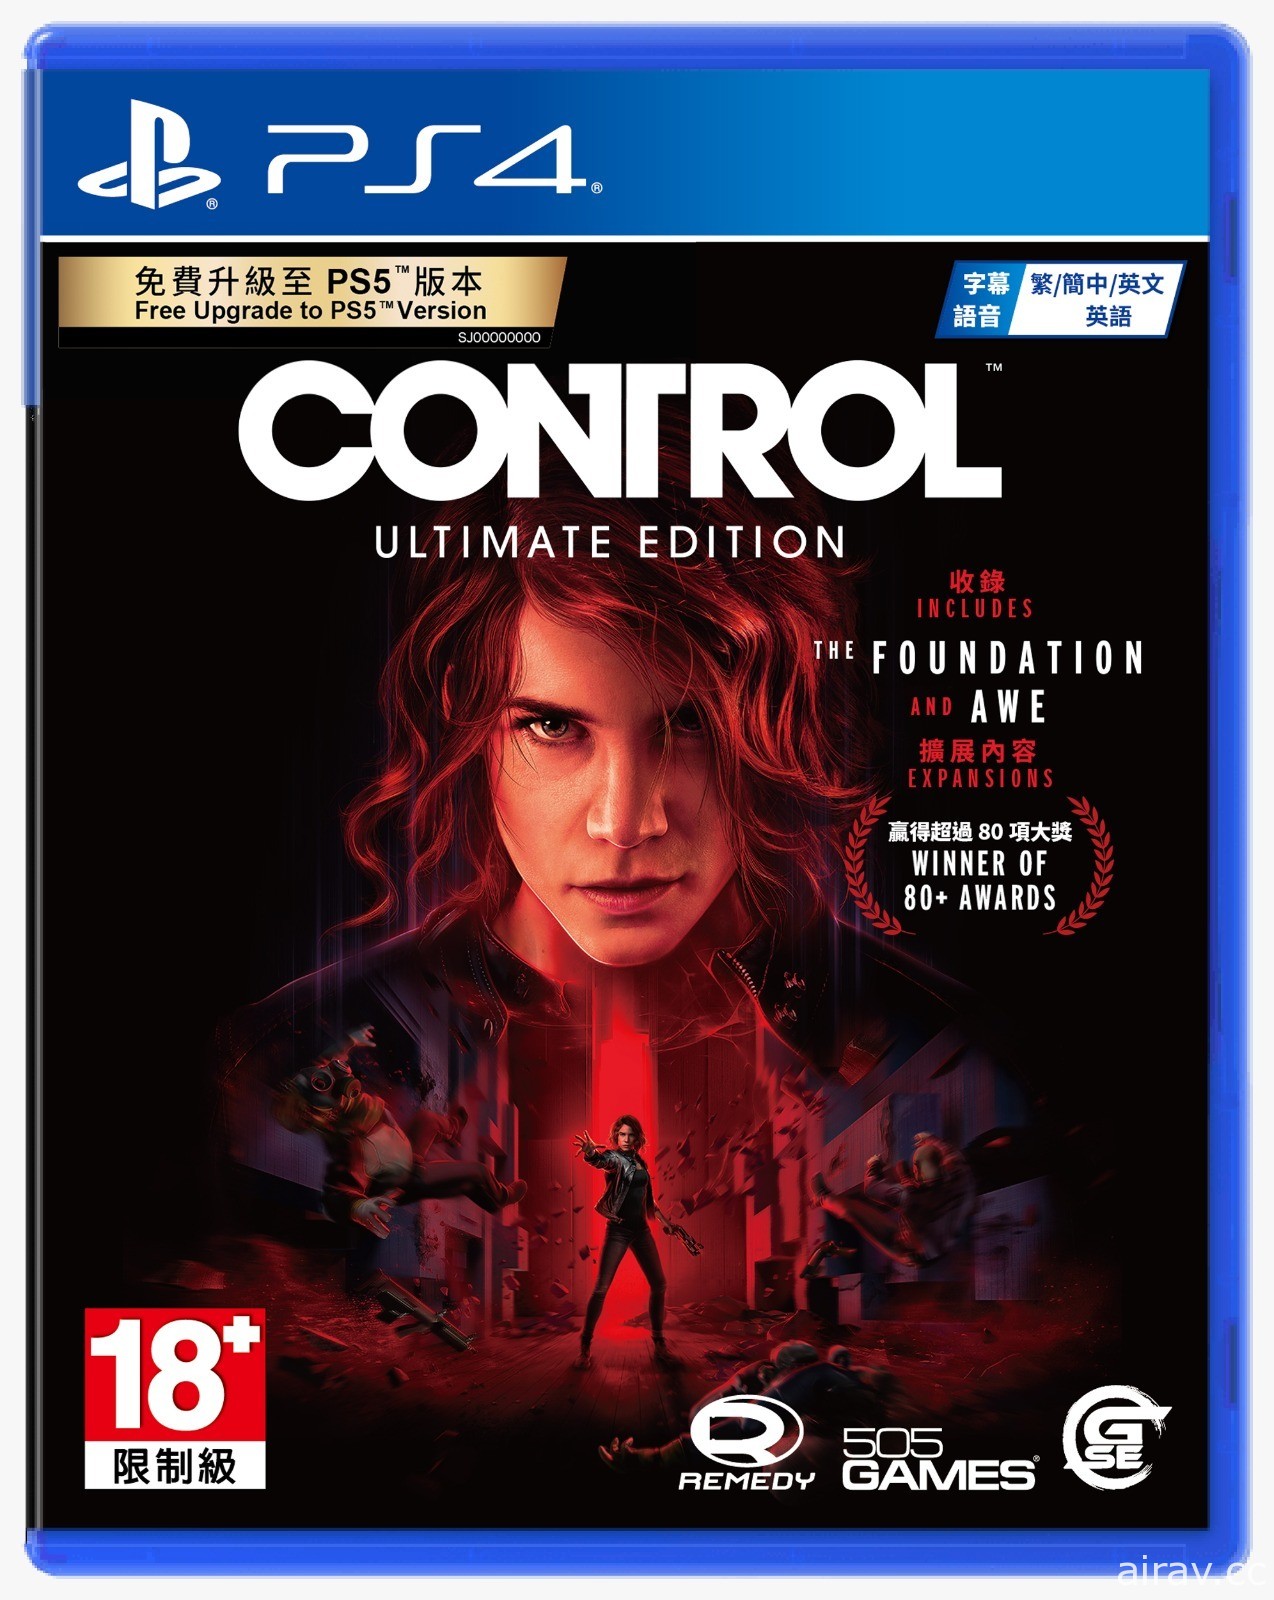 《控制 CONTROL 终极版》亚洲完全数量限定版抢先开箱预览